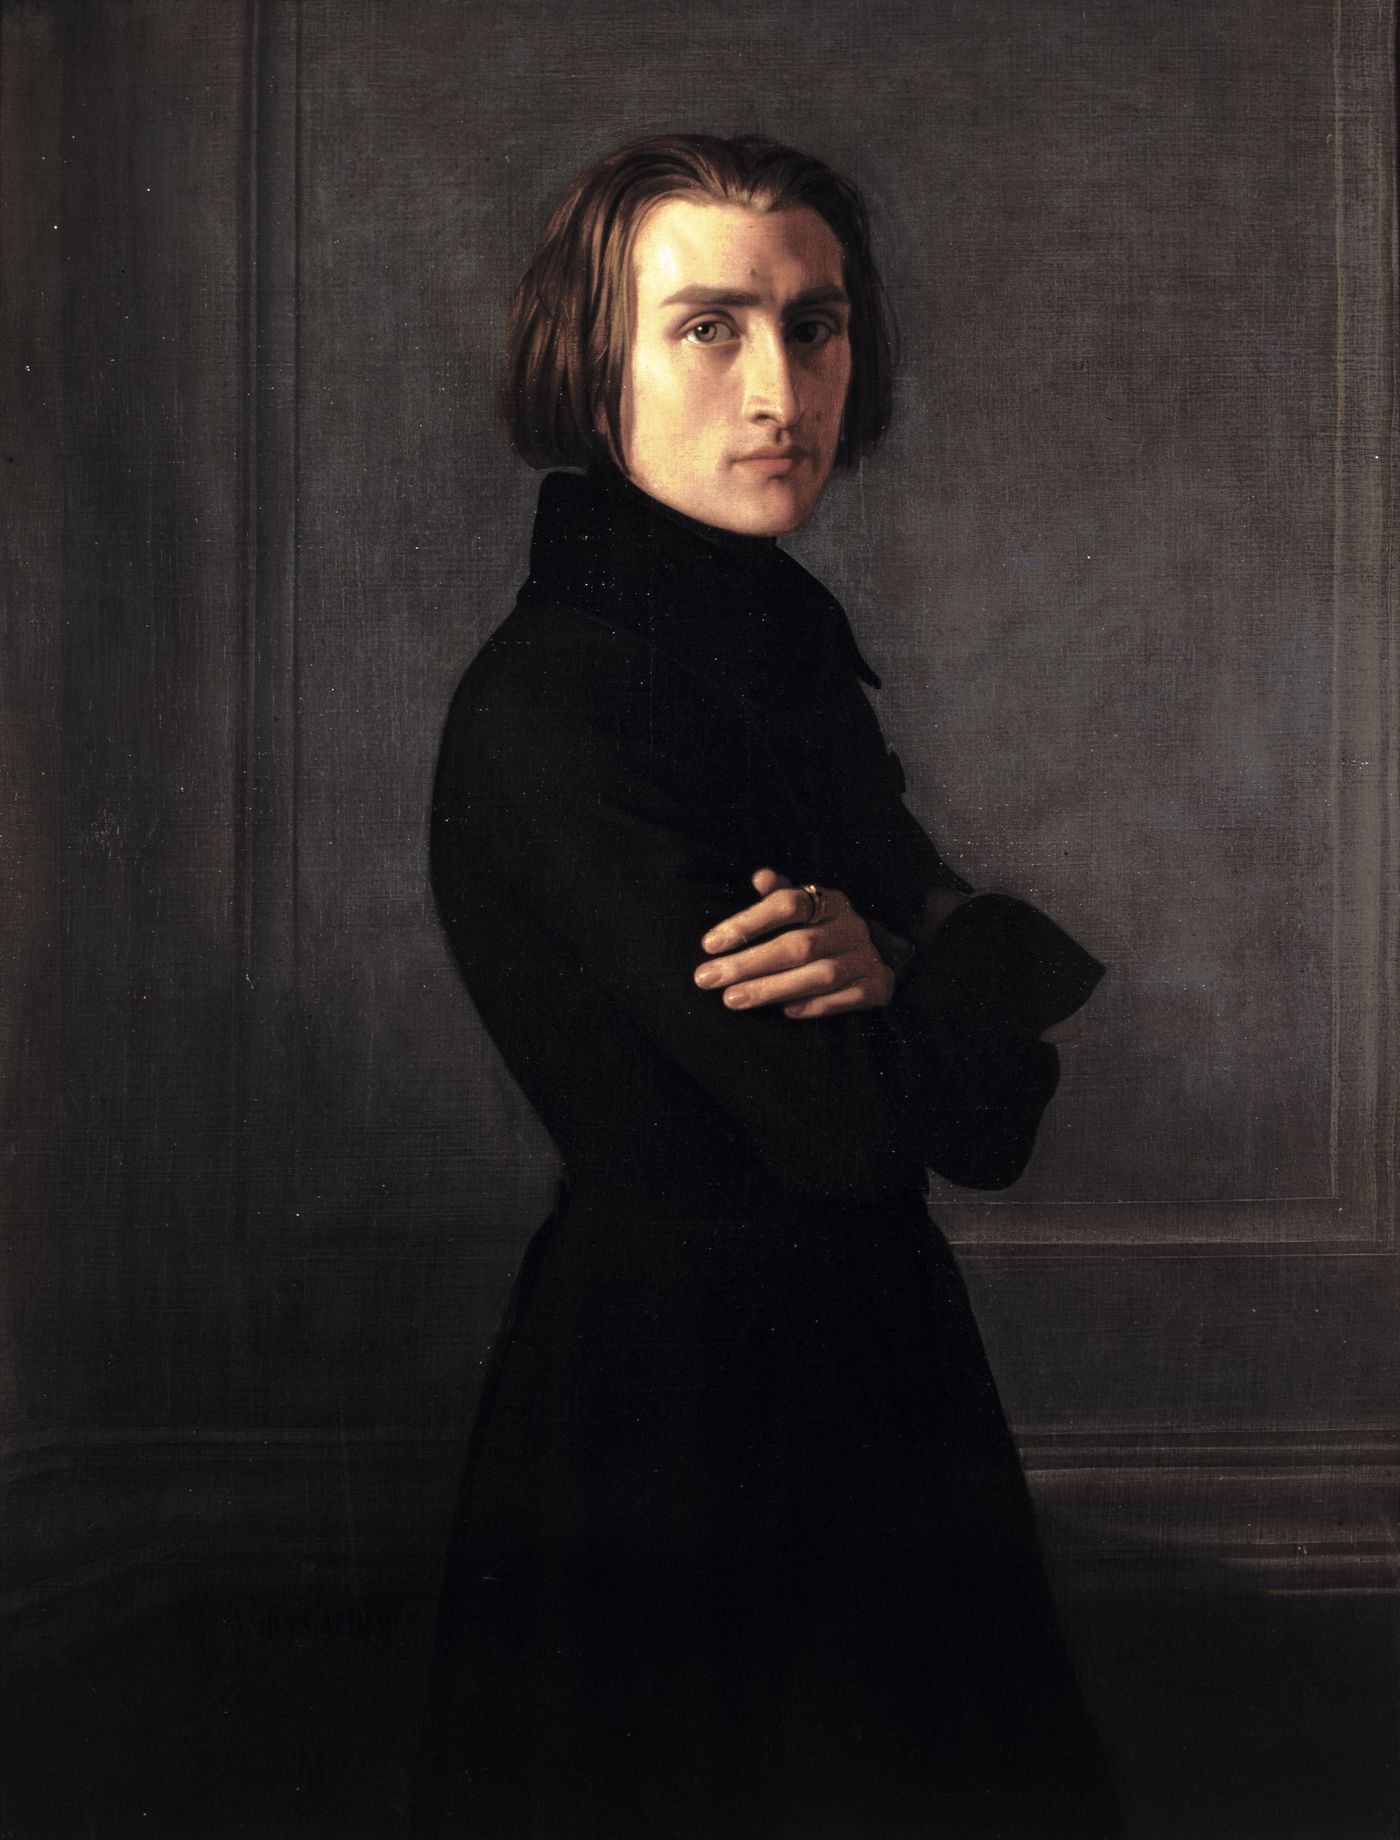 Portrait de Franz Liszt